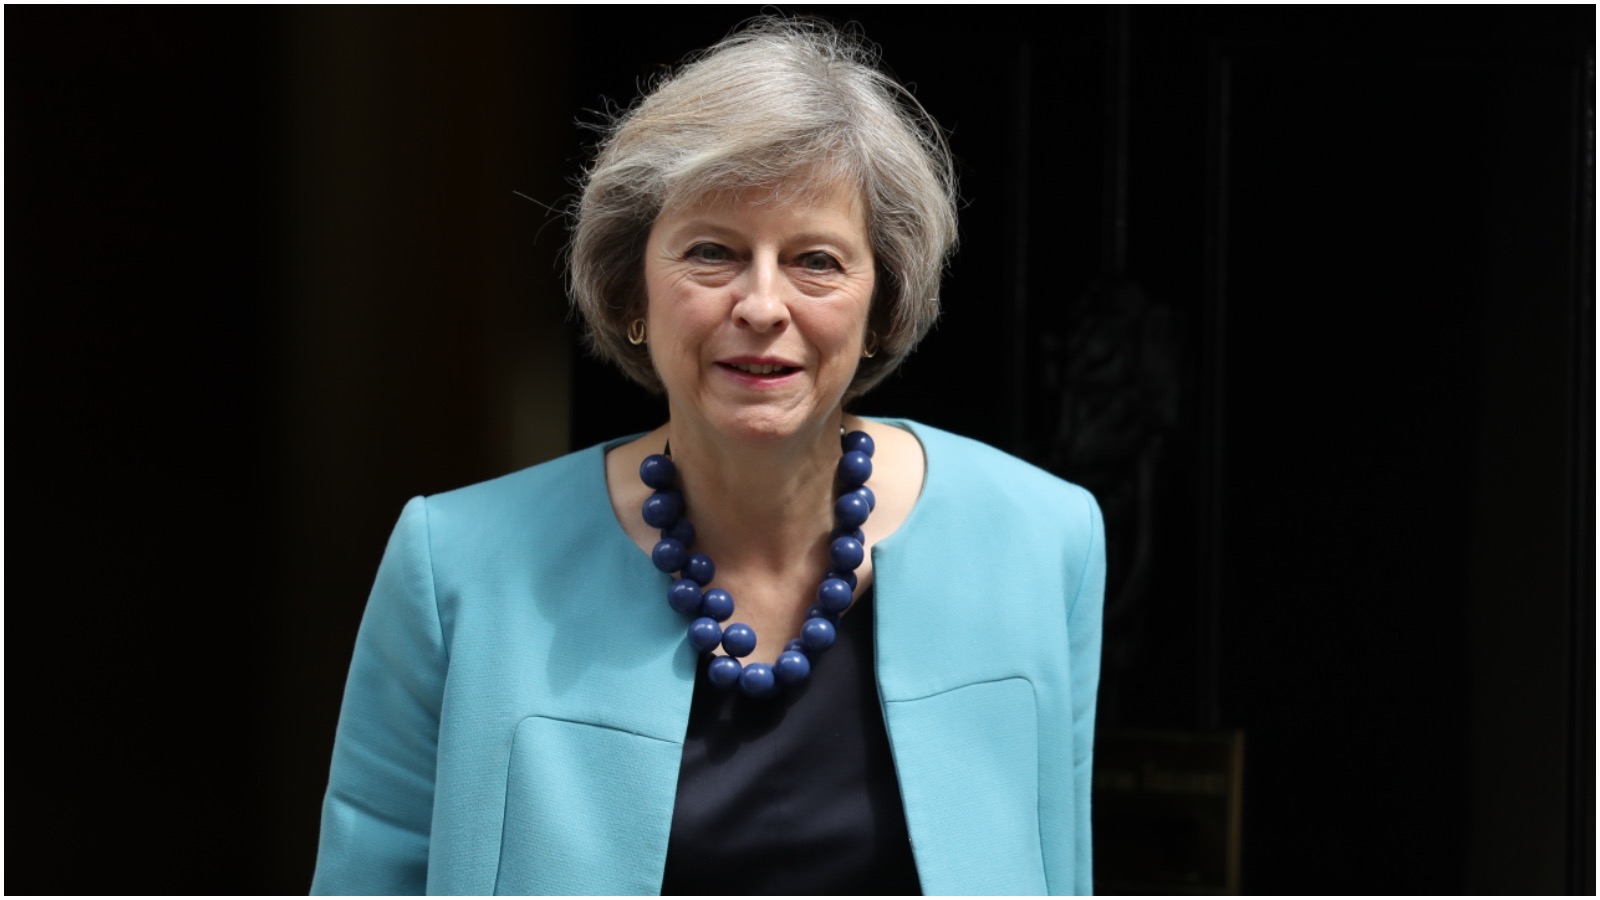 Dr. Isabelle Hertner om Theresa May og Brexit: “Hun er mere i politik for magten end for ideologien”